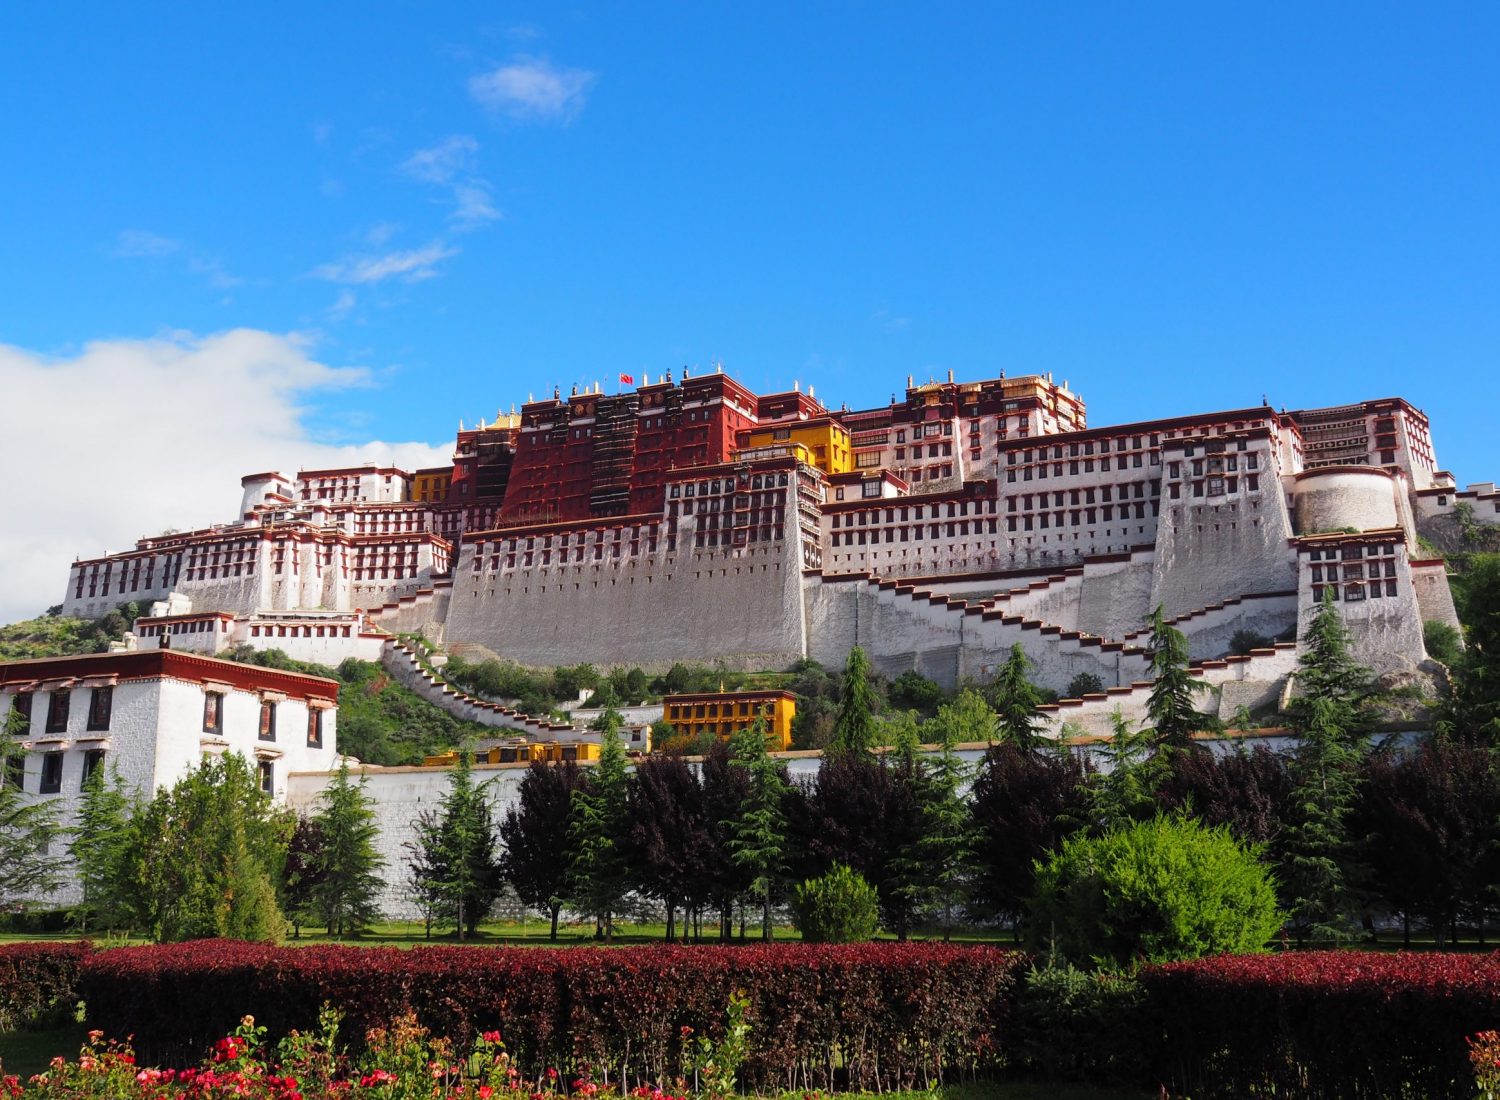 ZenYou Tibet